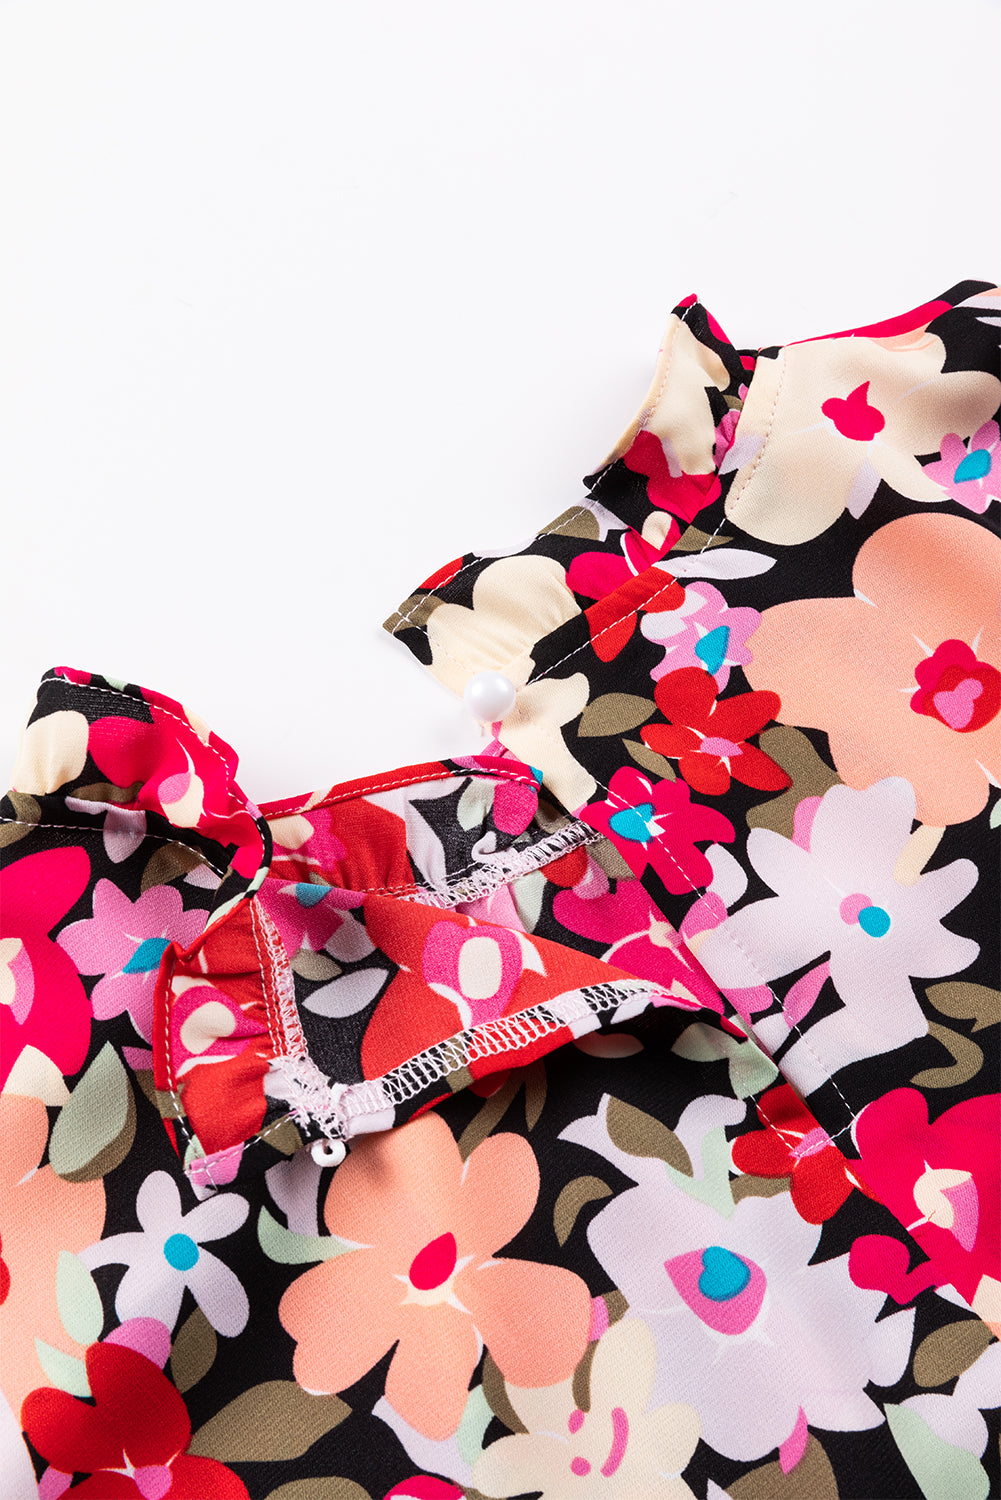 Camicetta floreale con maniche a bracciale arricciate con collo arricciato stampato rosa